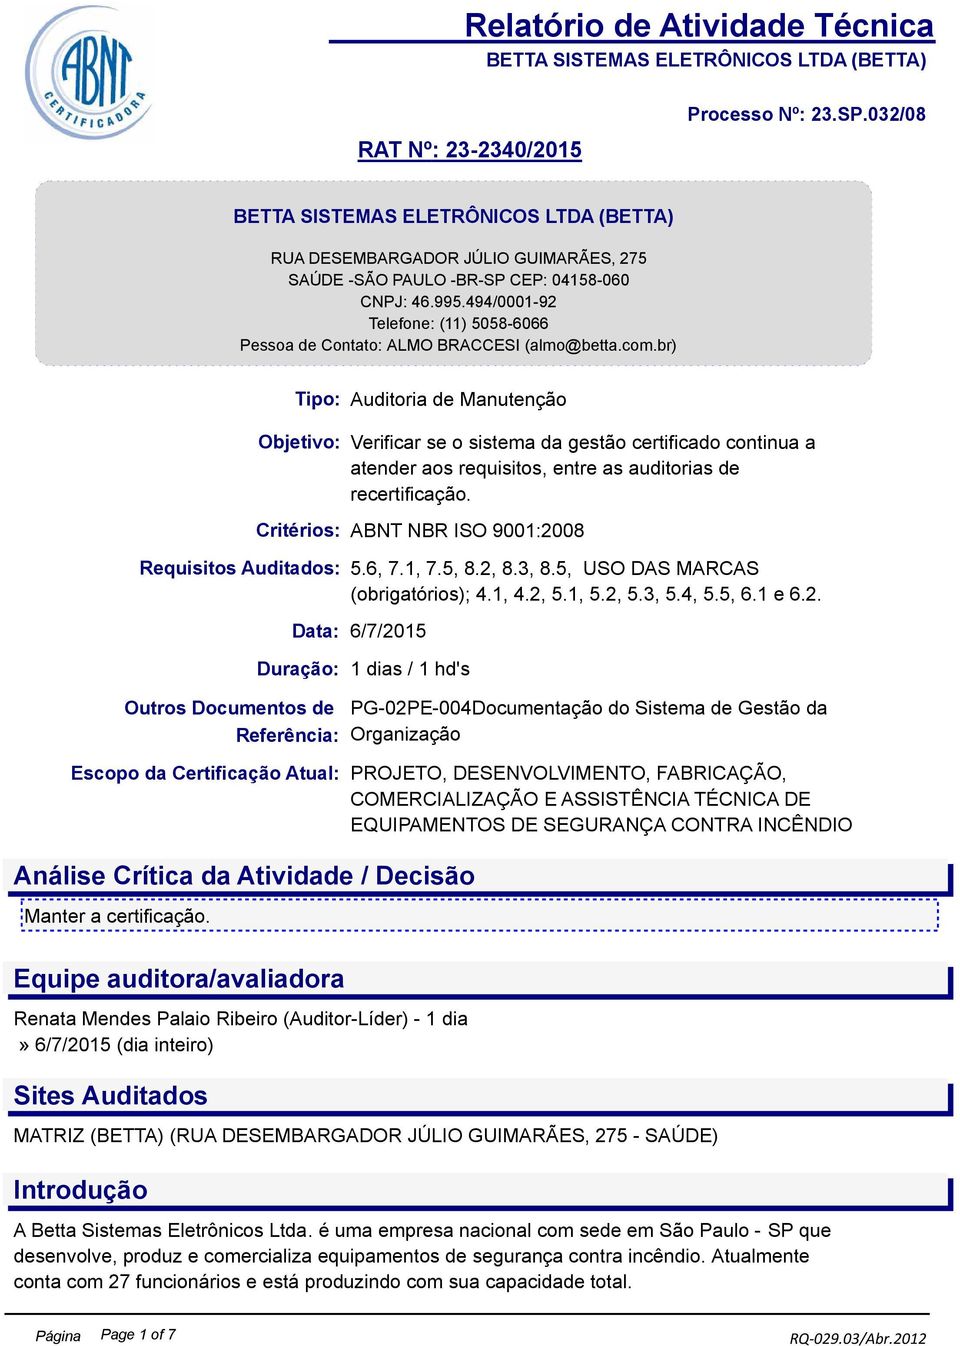 Critérios: ABNT NBR ISO 9001:20